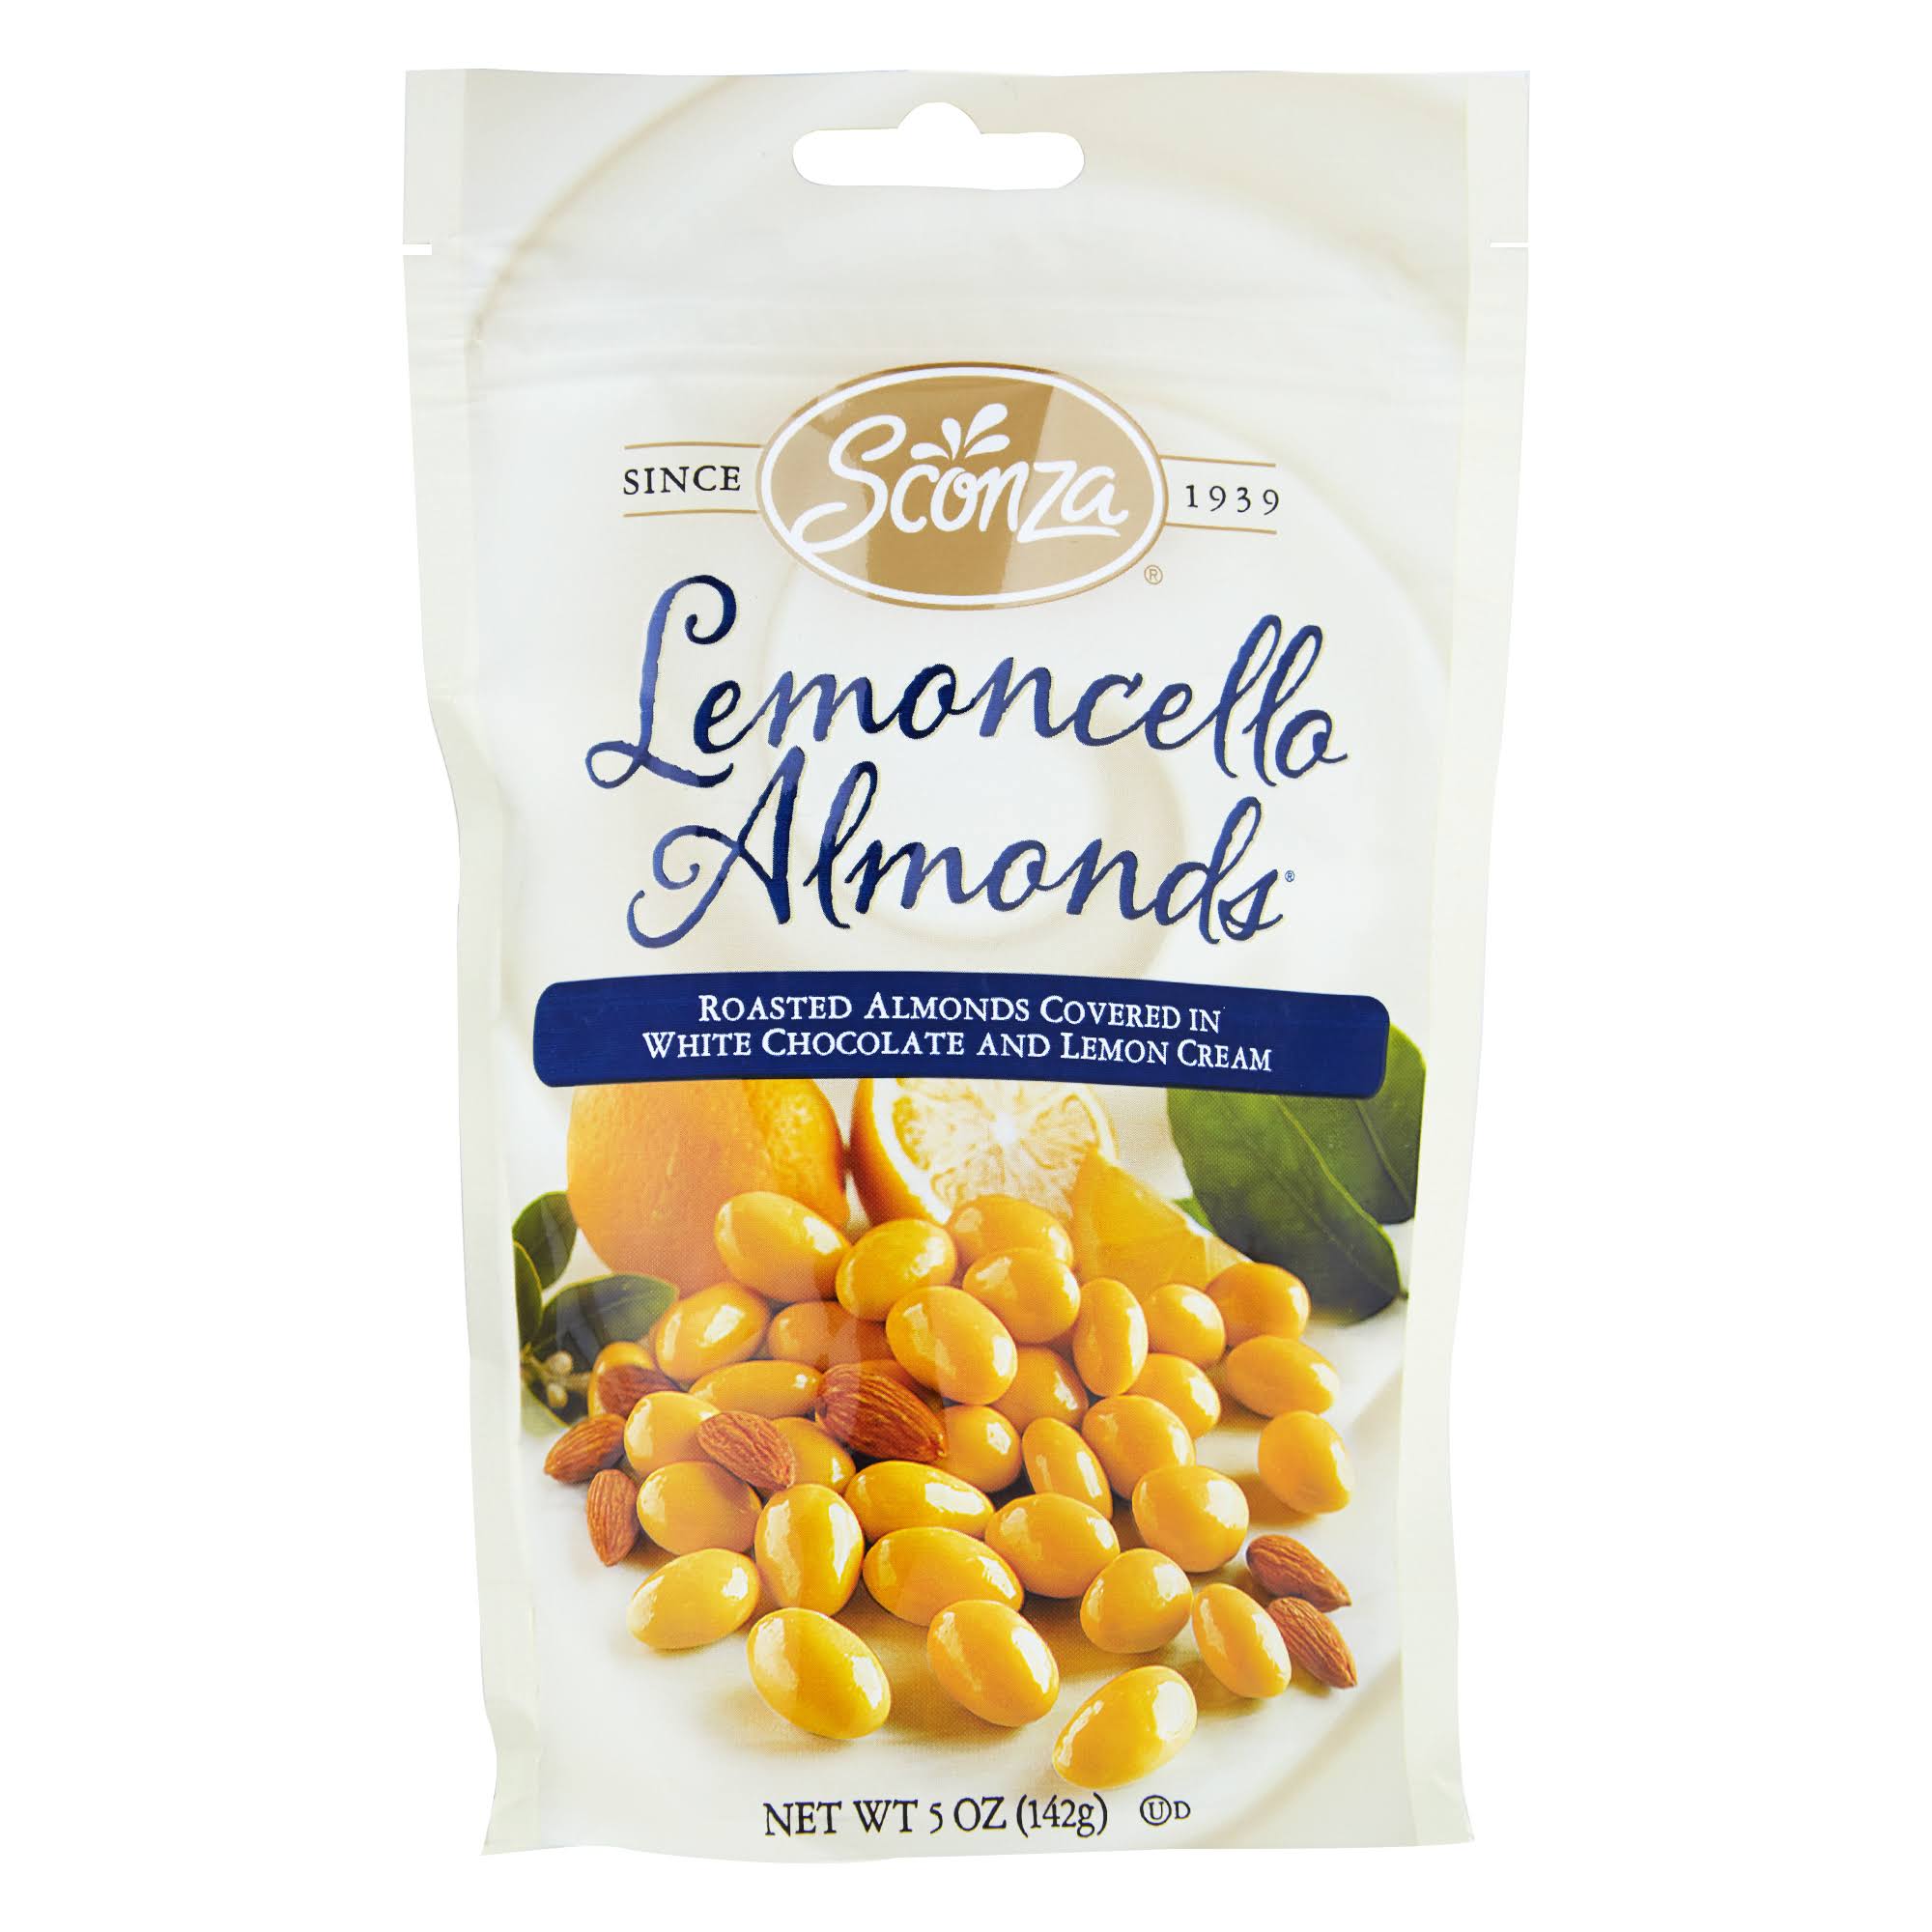 Sconza Lemoncello Almonds - 5 oz